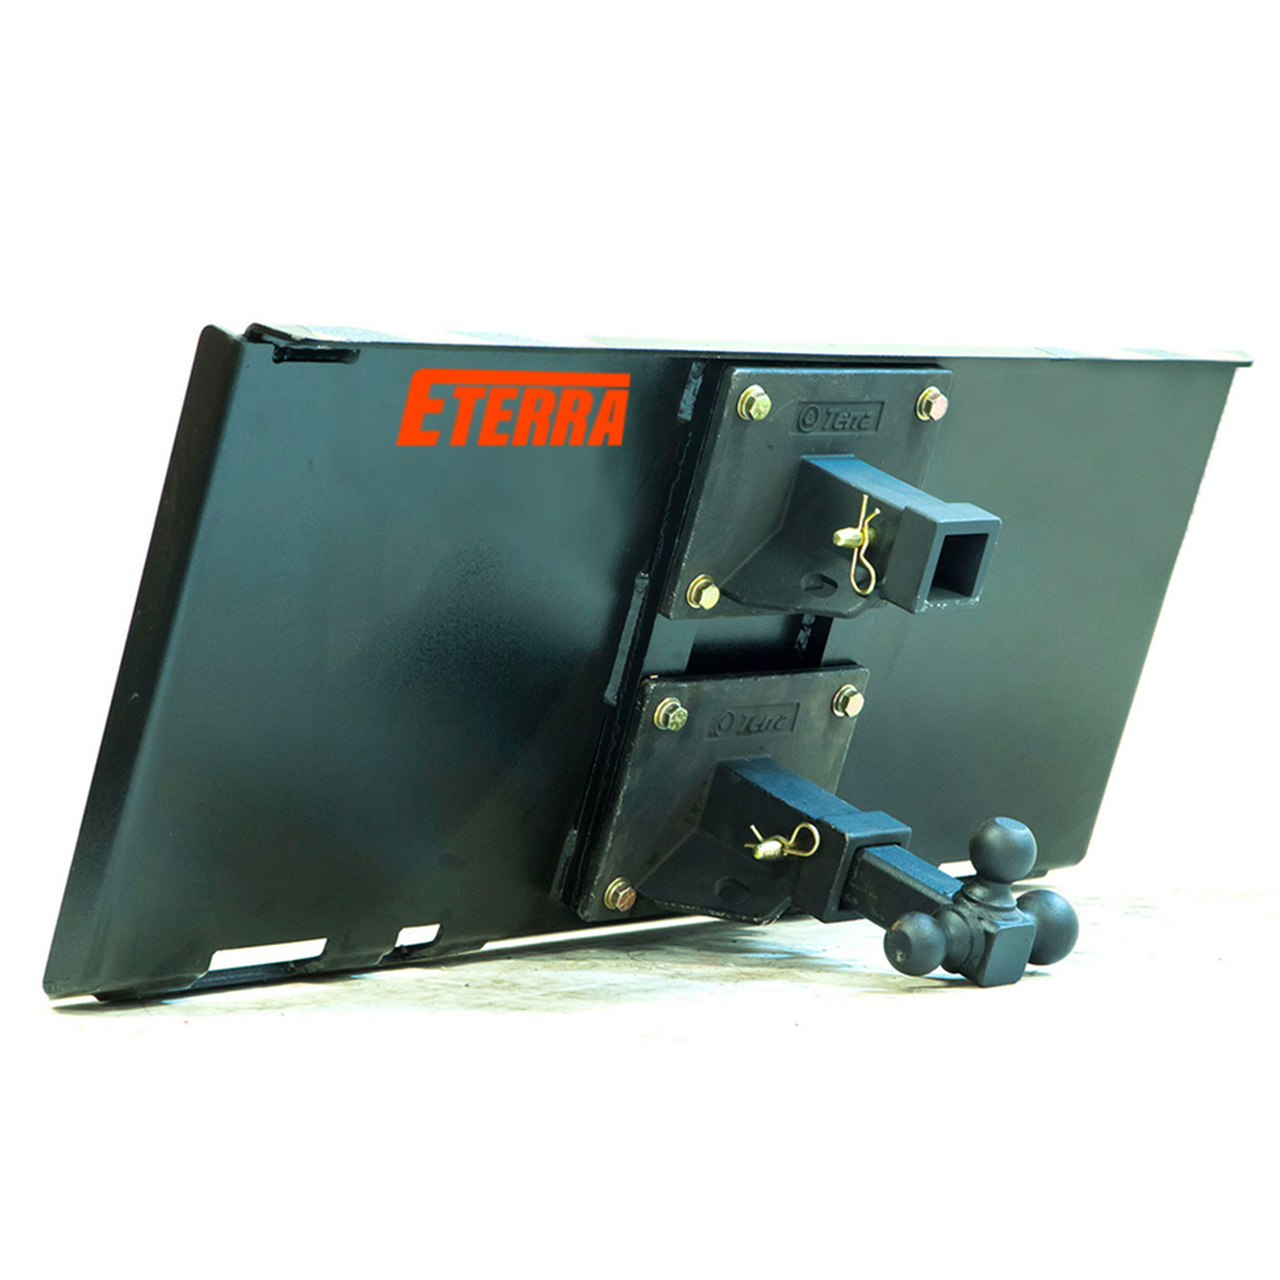 eterra-skid-steer-dual-hitch-receiver.jpg